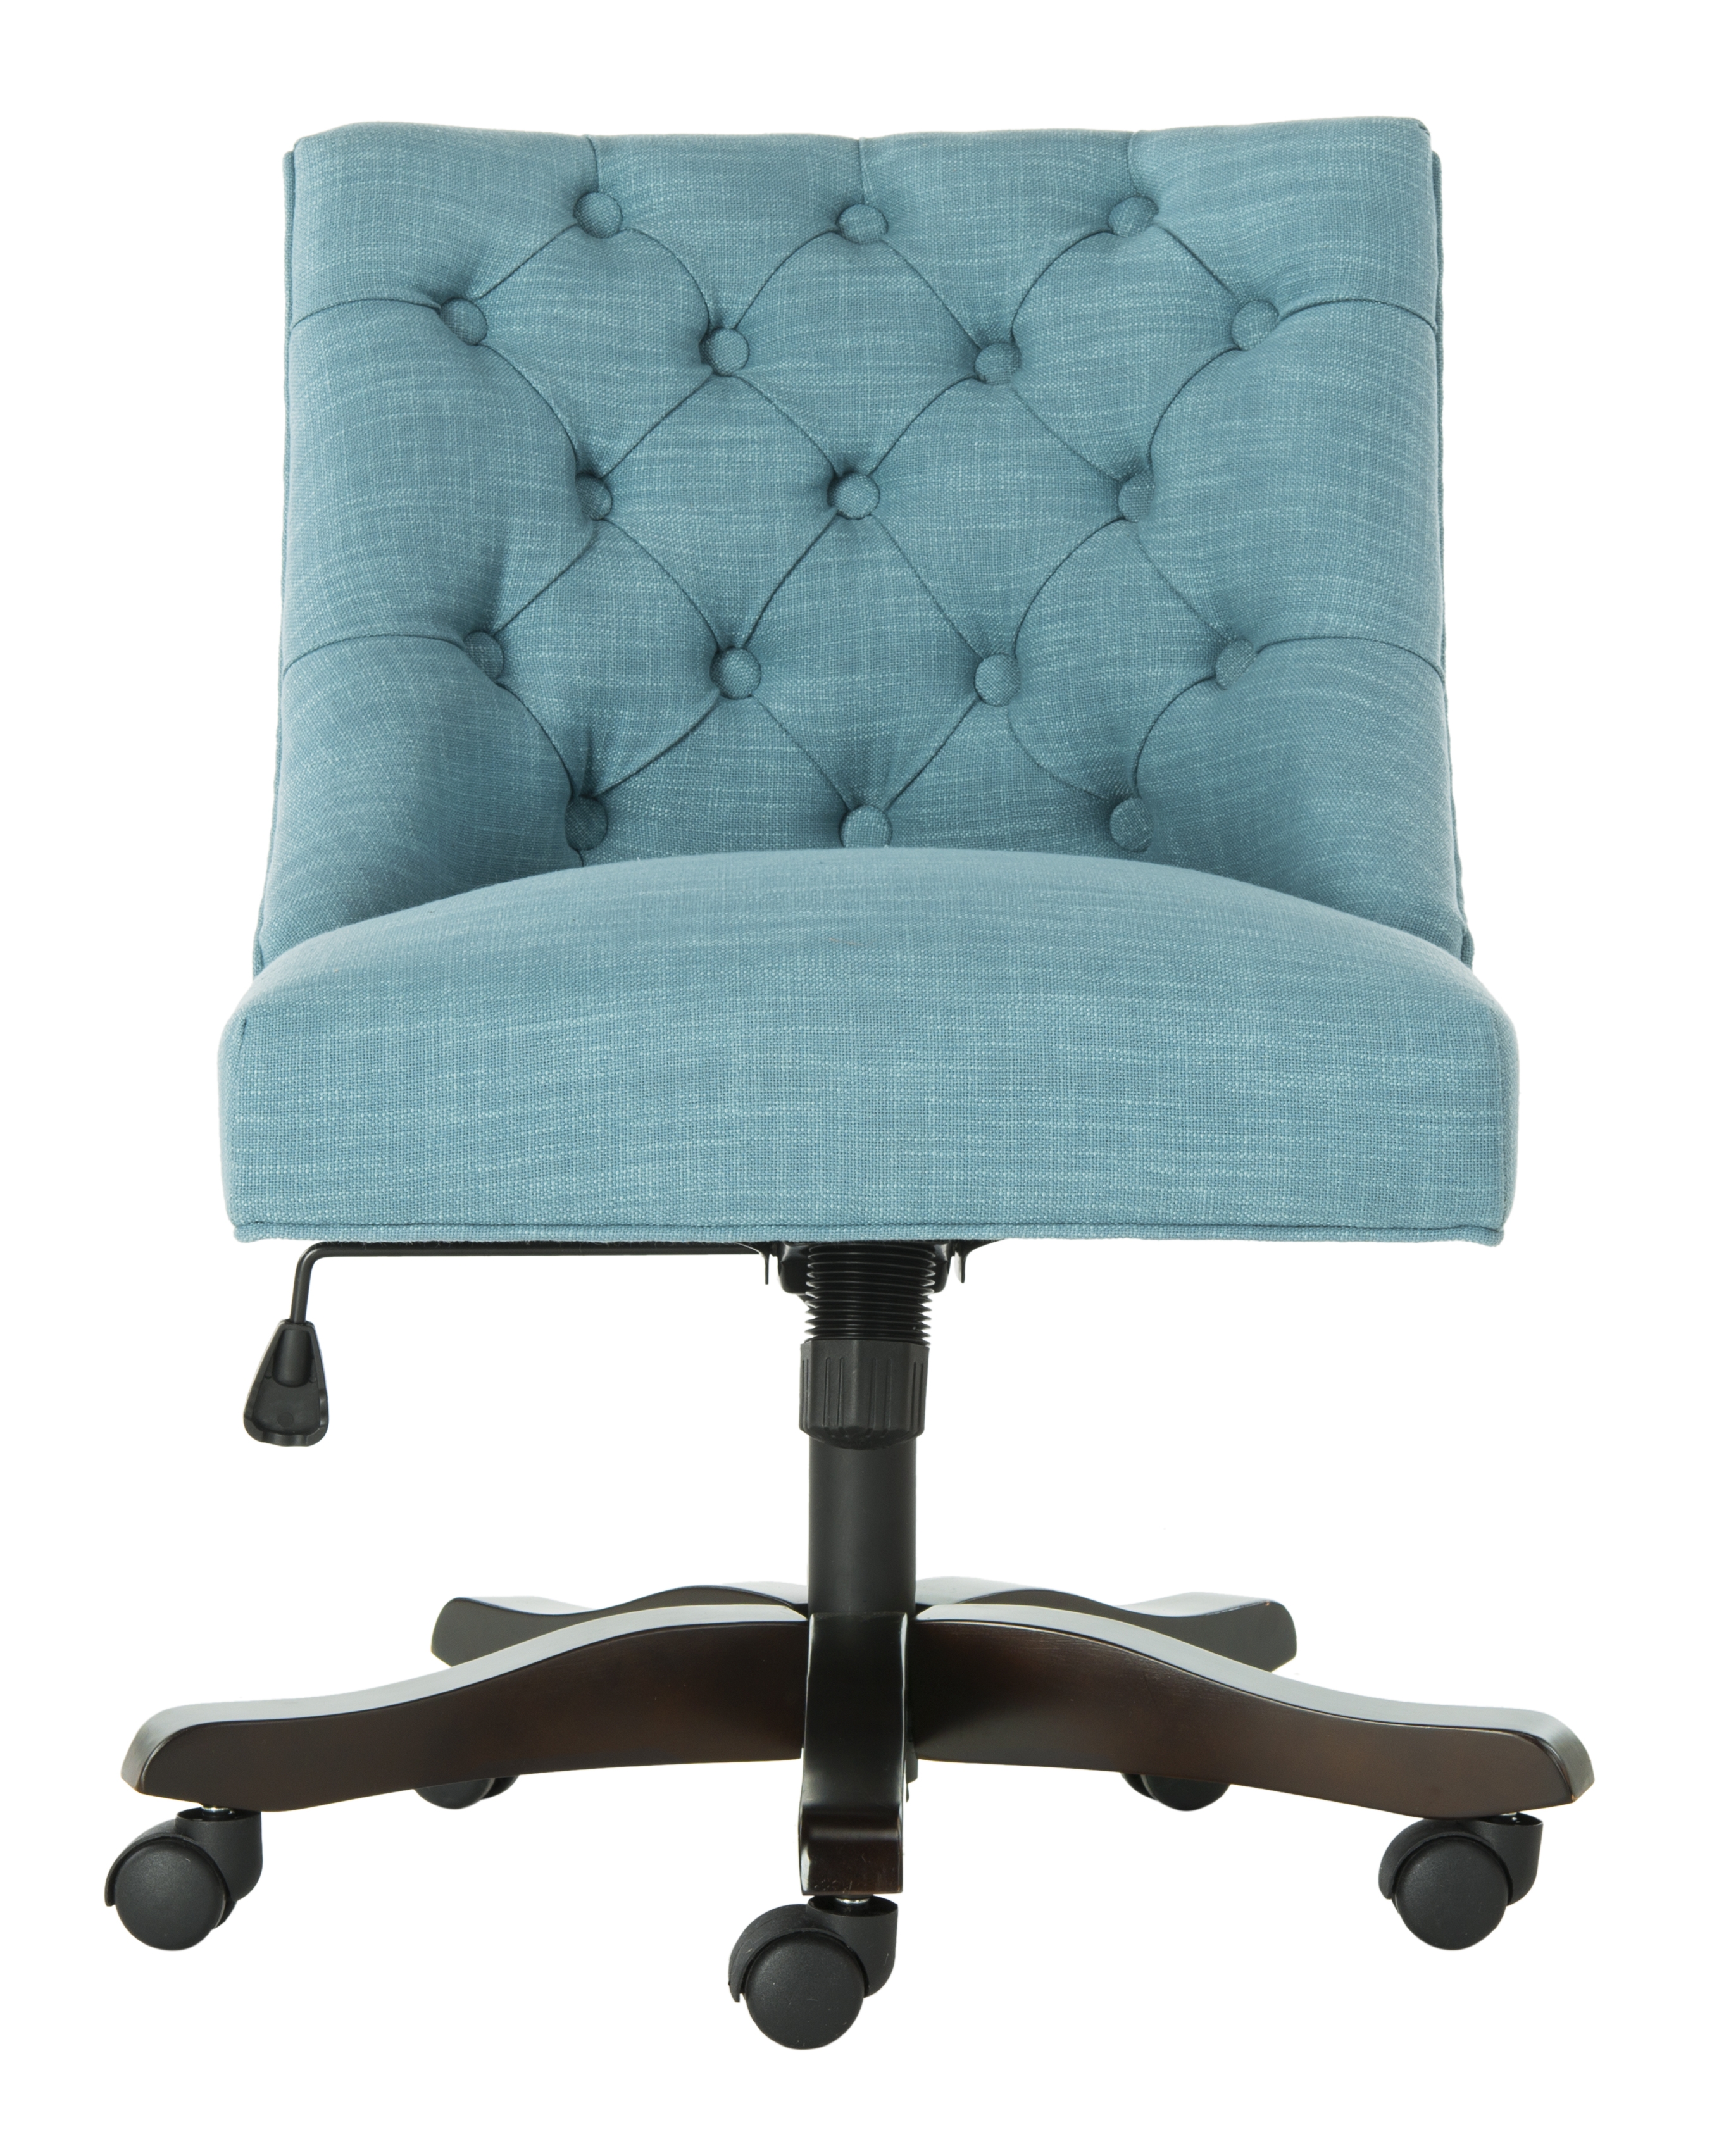 Soho Tufted Linen Swivel Desk Chair - Light Blue - Arlo Home - Image 0